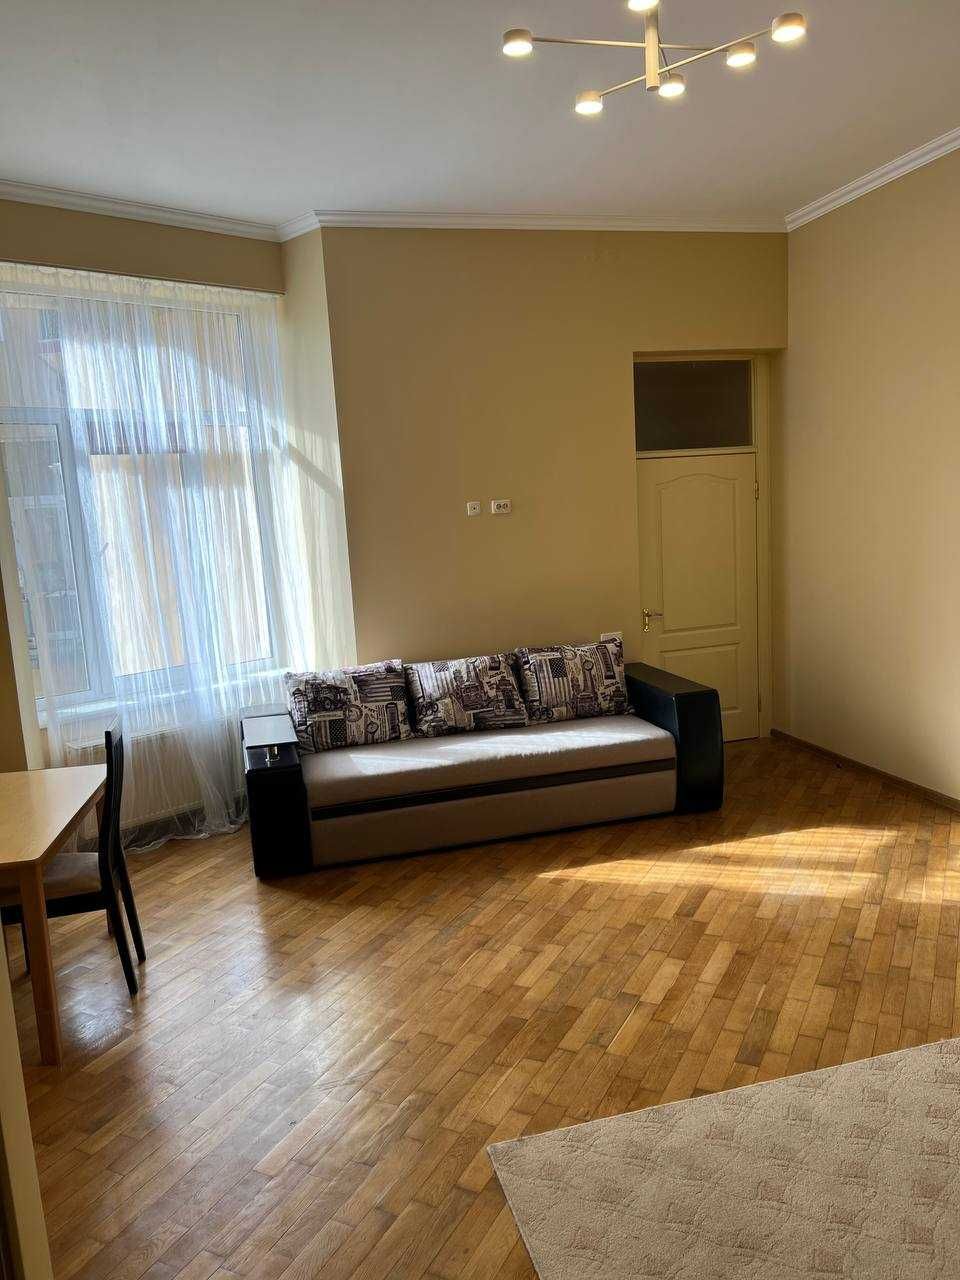 Оренда 1-кімнатної квартири у центрі Львова по вулиці Дашка (Філатова)